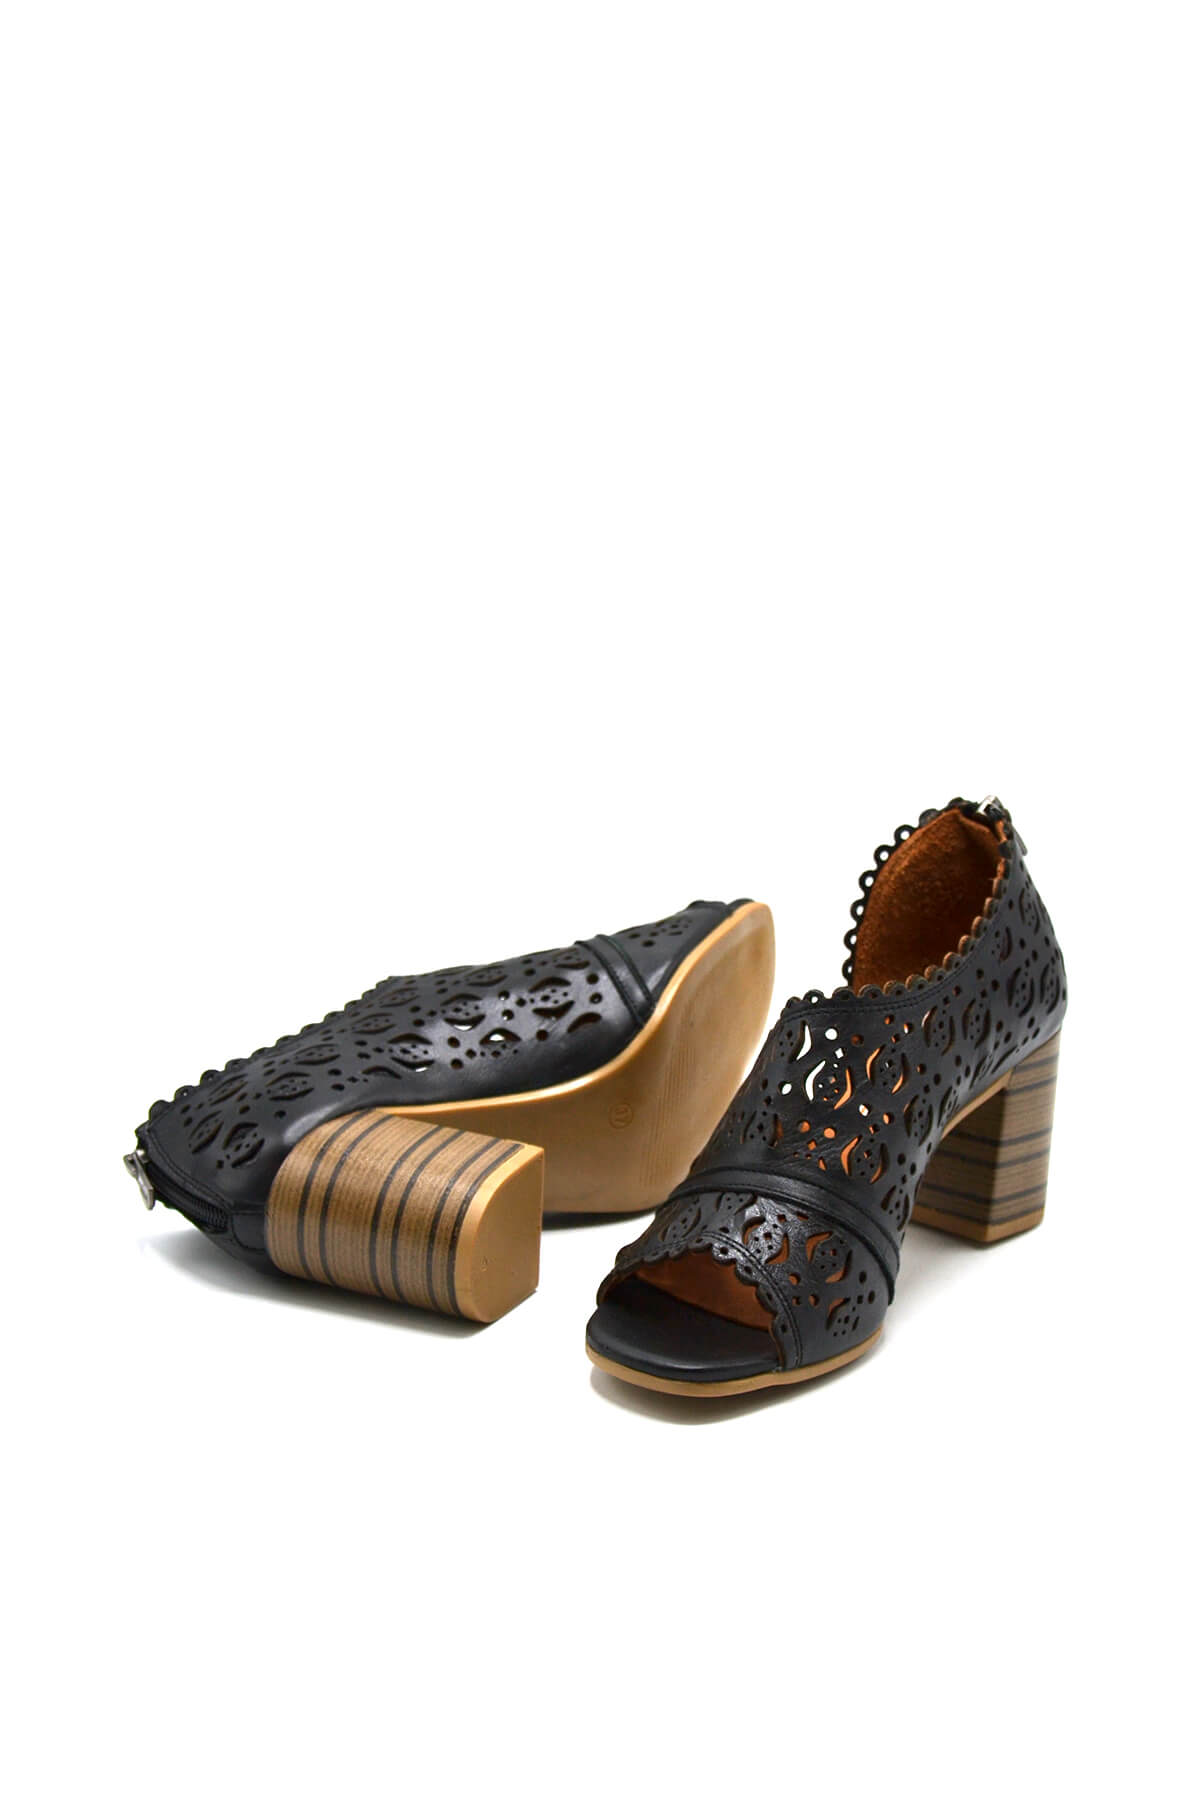 Kadın Yazlık Topuklu Deri Sandalet Siyah 2108511Y